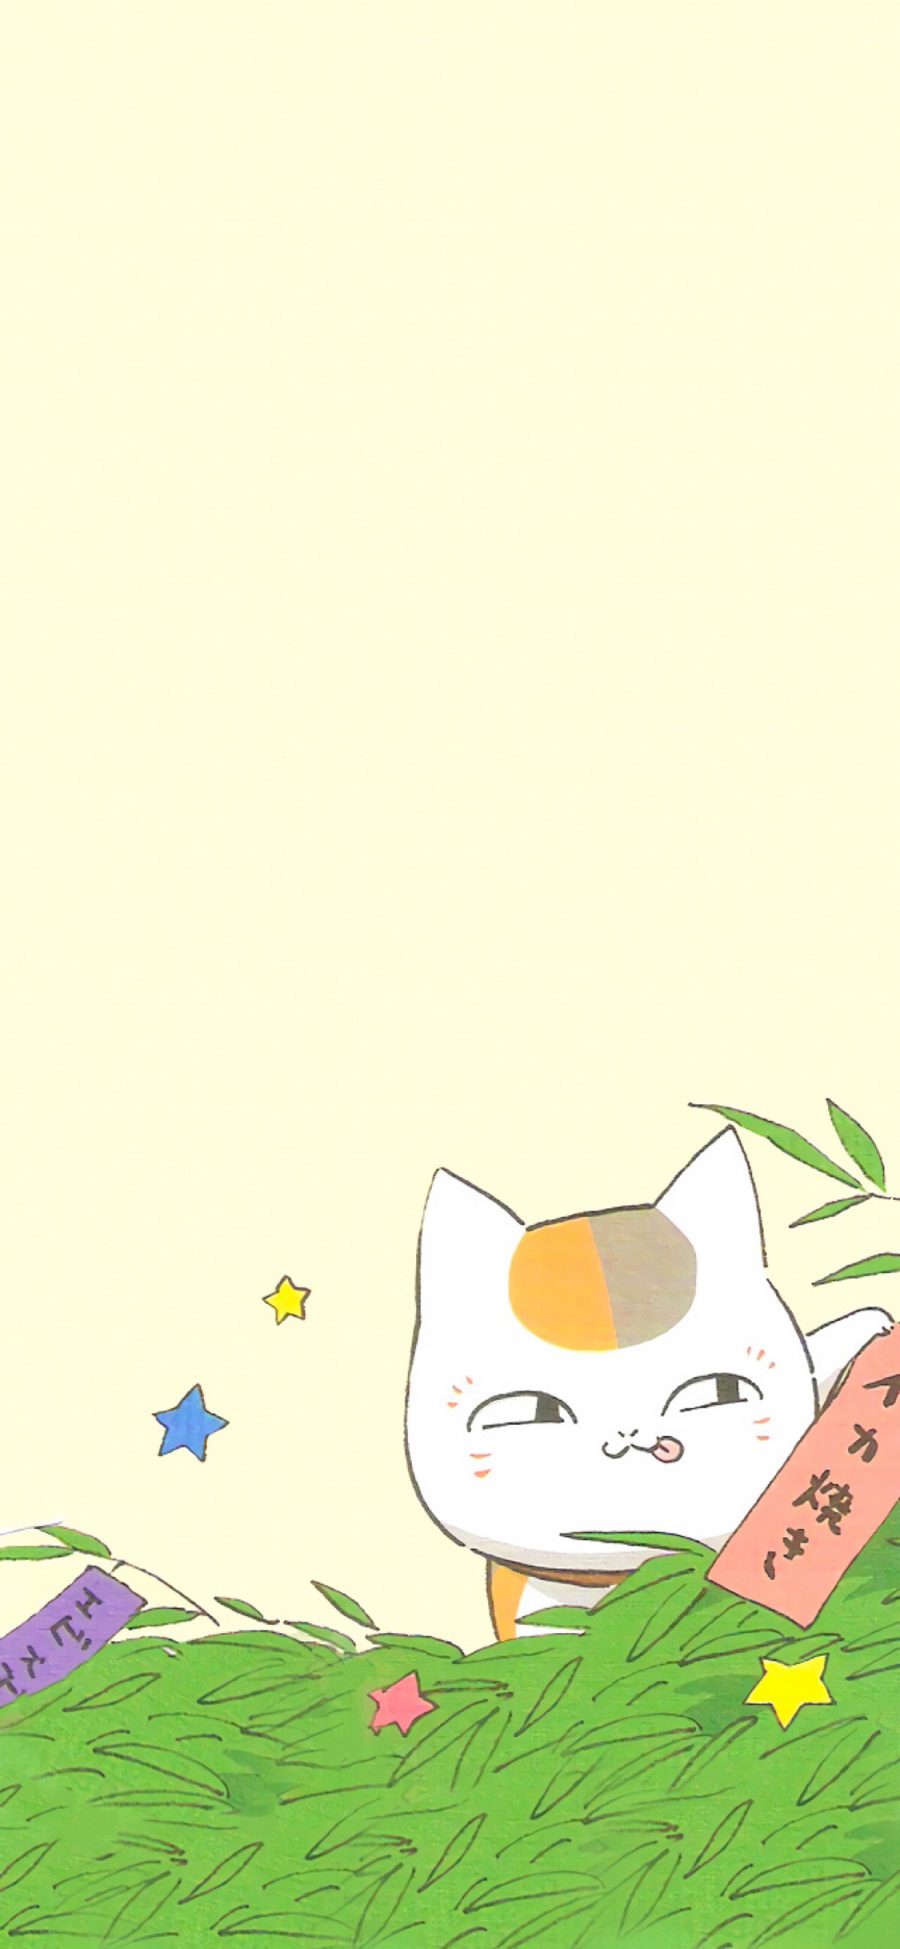 [2436×1125]日漫 夏目友人帐 猫老师 可爱 苹果手机动漫壁纸图片